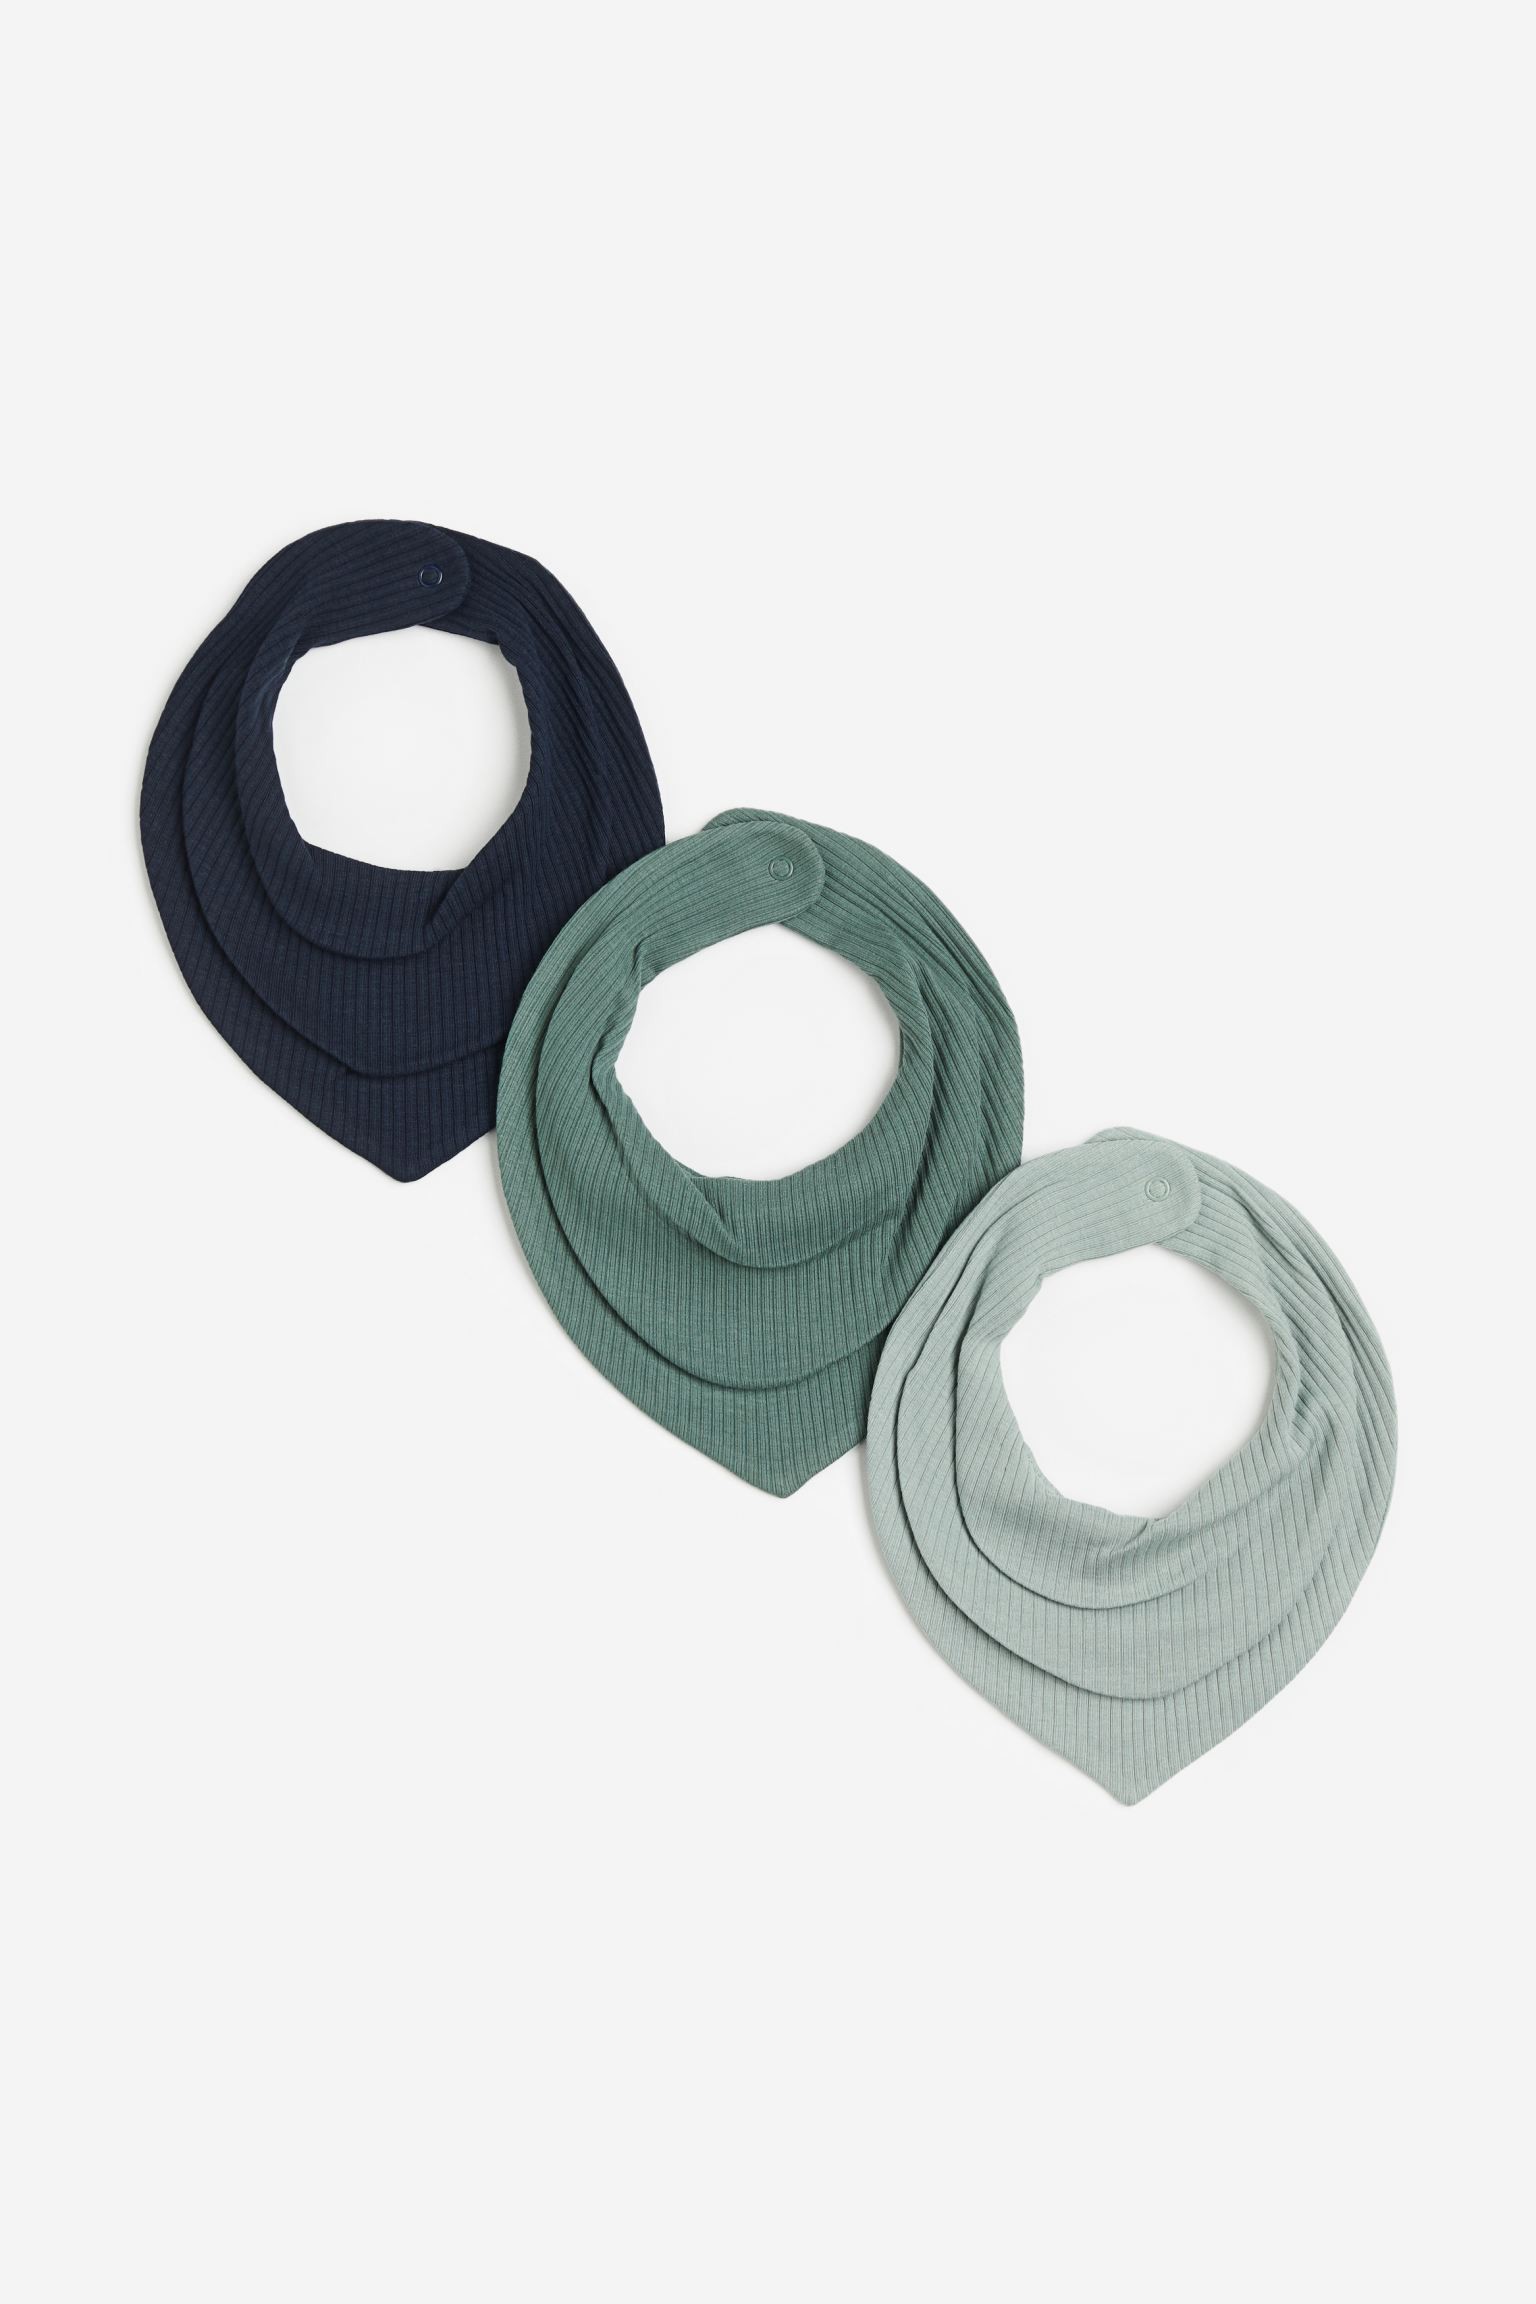 Трикутний шарф у смужки, 3 шт., Темно-синій/Зелений, 19x19